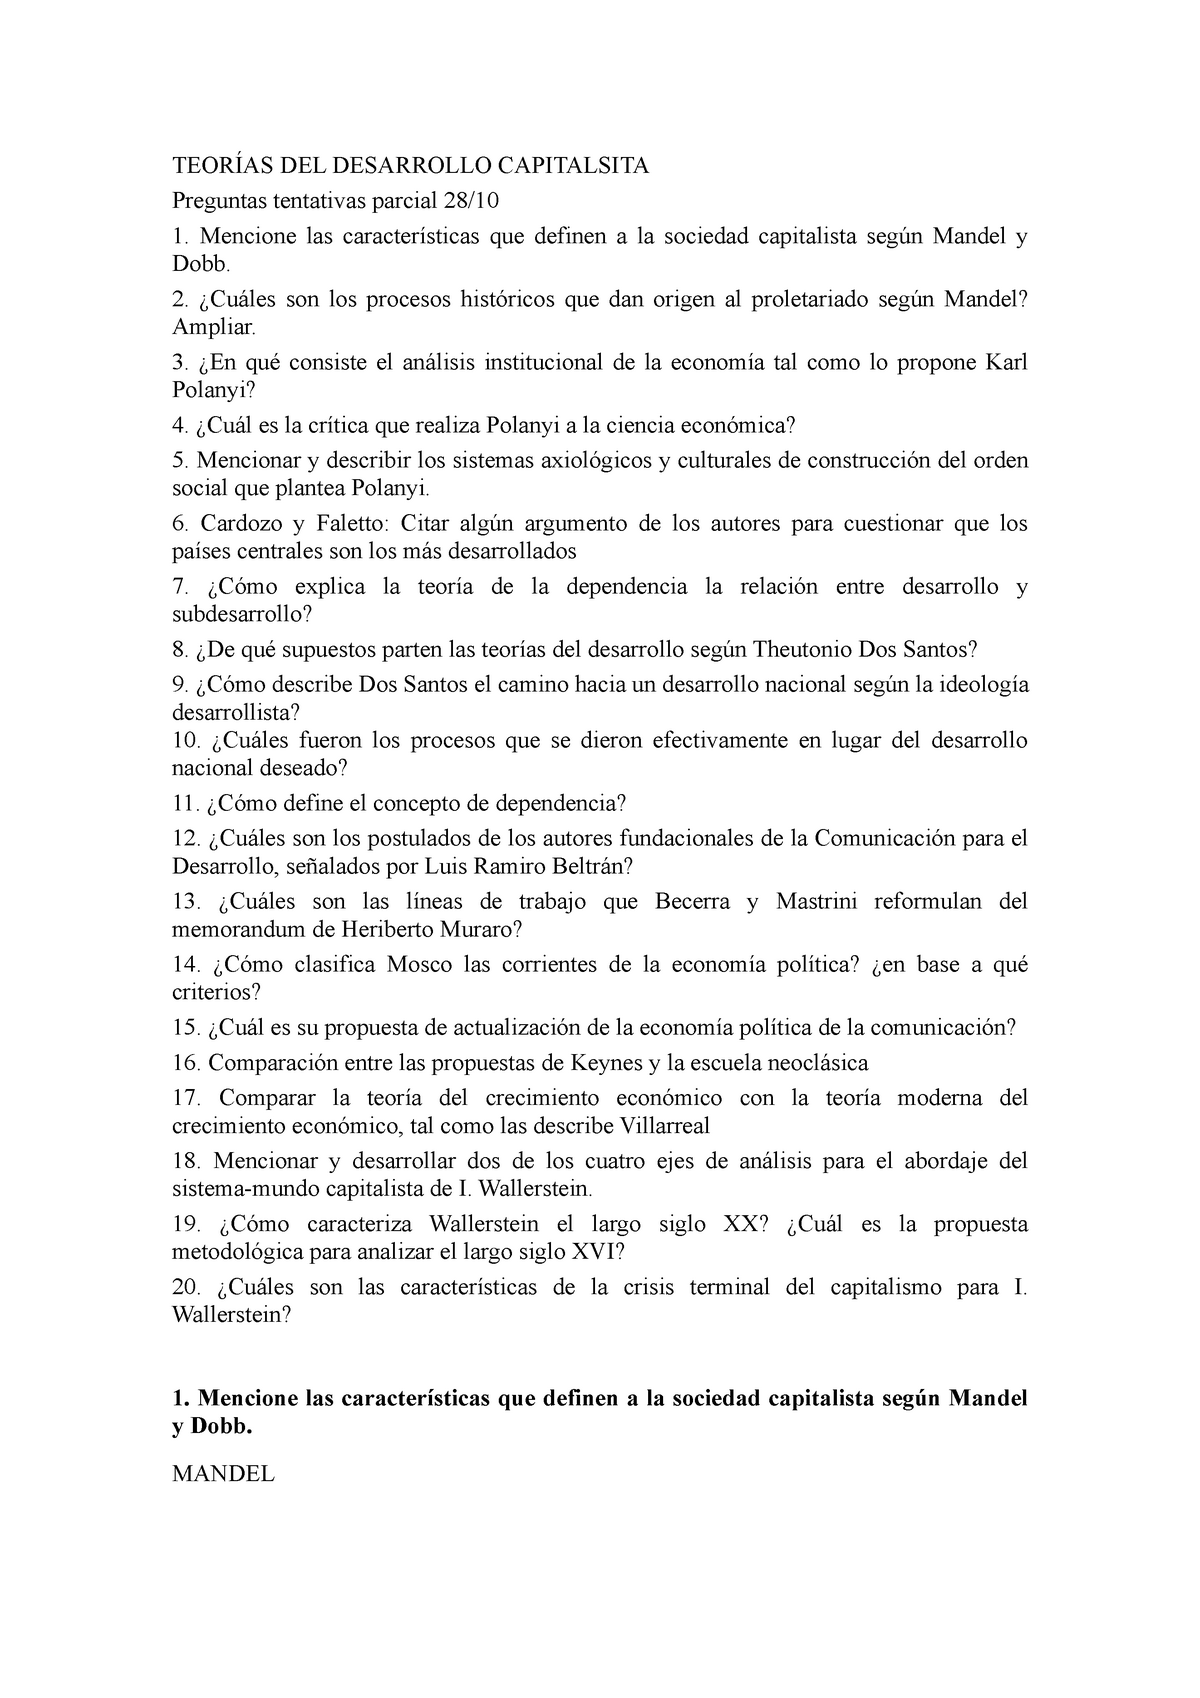 Preguntas-parcial-capitalista - TEORÍAS DEL DESARROLLO CAPITALSITA  Preguntas tentativas parcial 28/ - Studocu